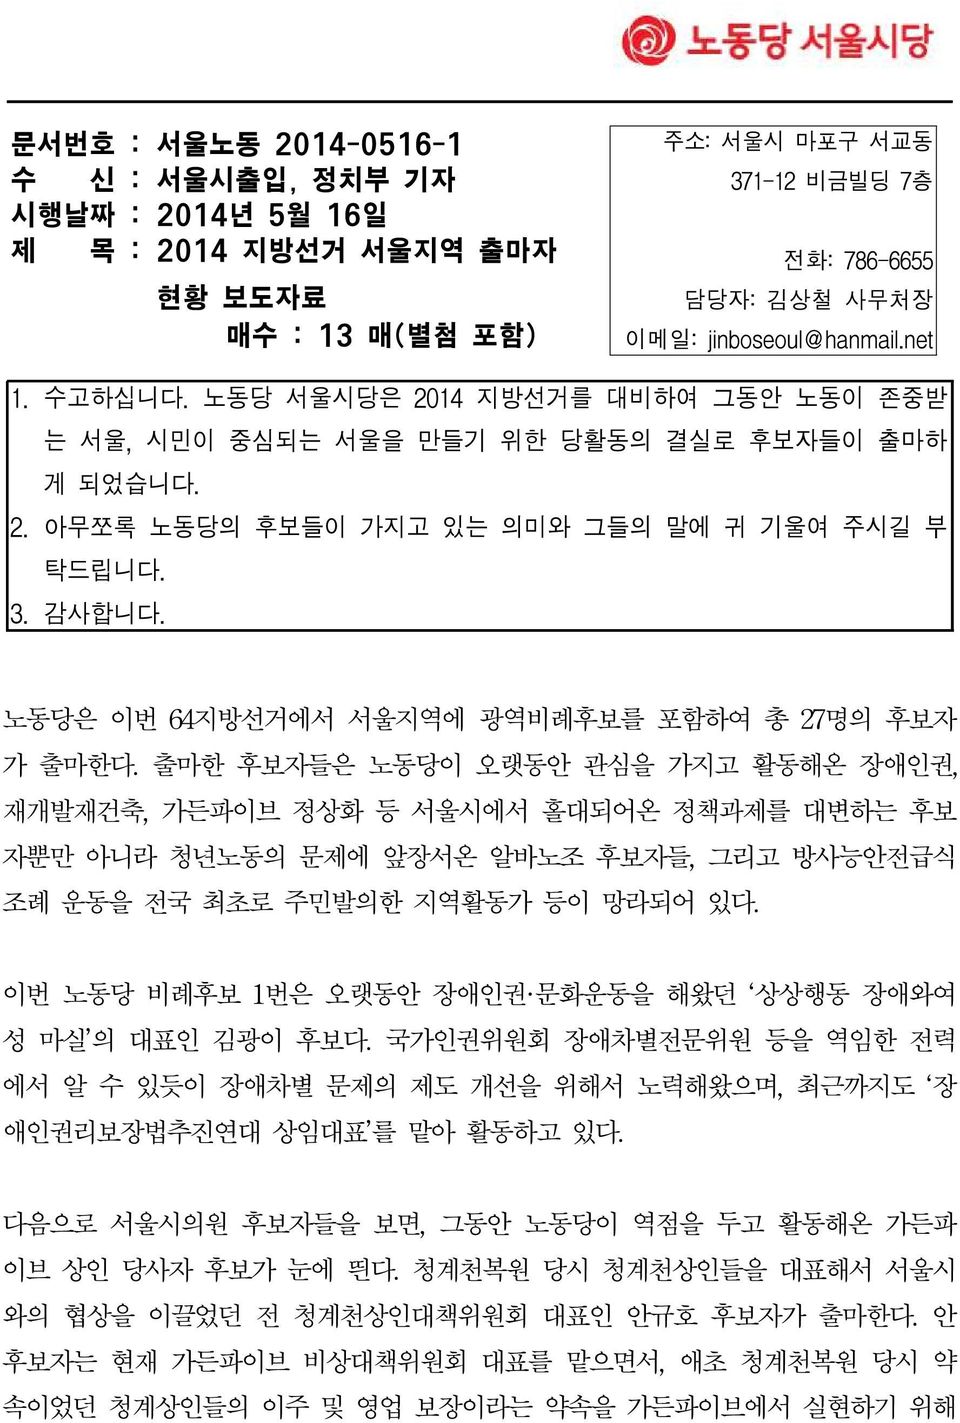 노동당은 이번 64지방선거에서 서울지역에 광역비례후보를 포함하여 총 27명의 후보자 가 출마한다.